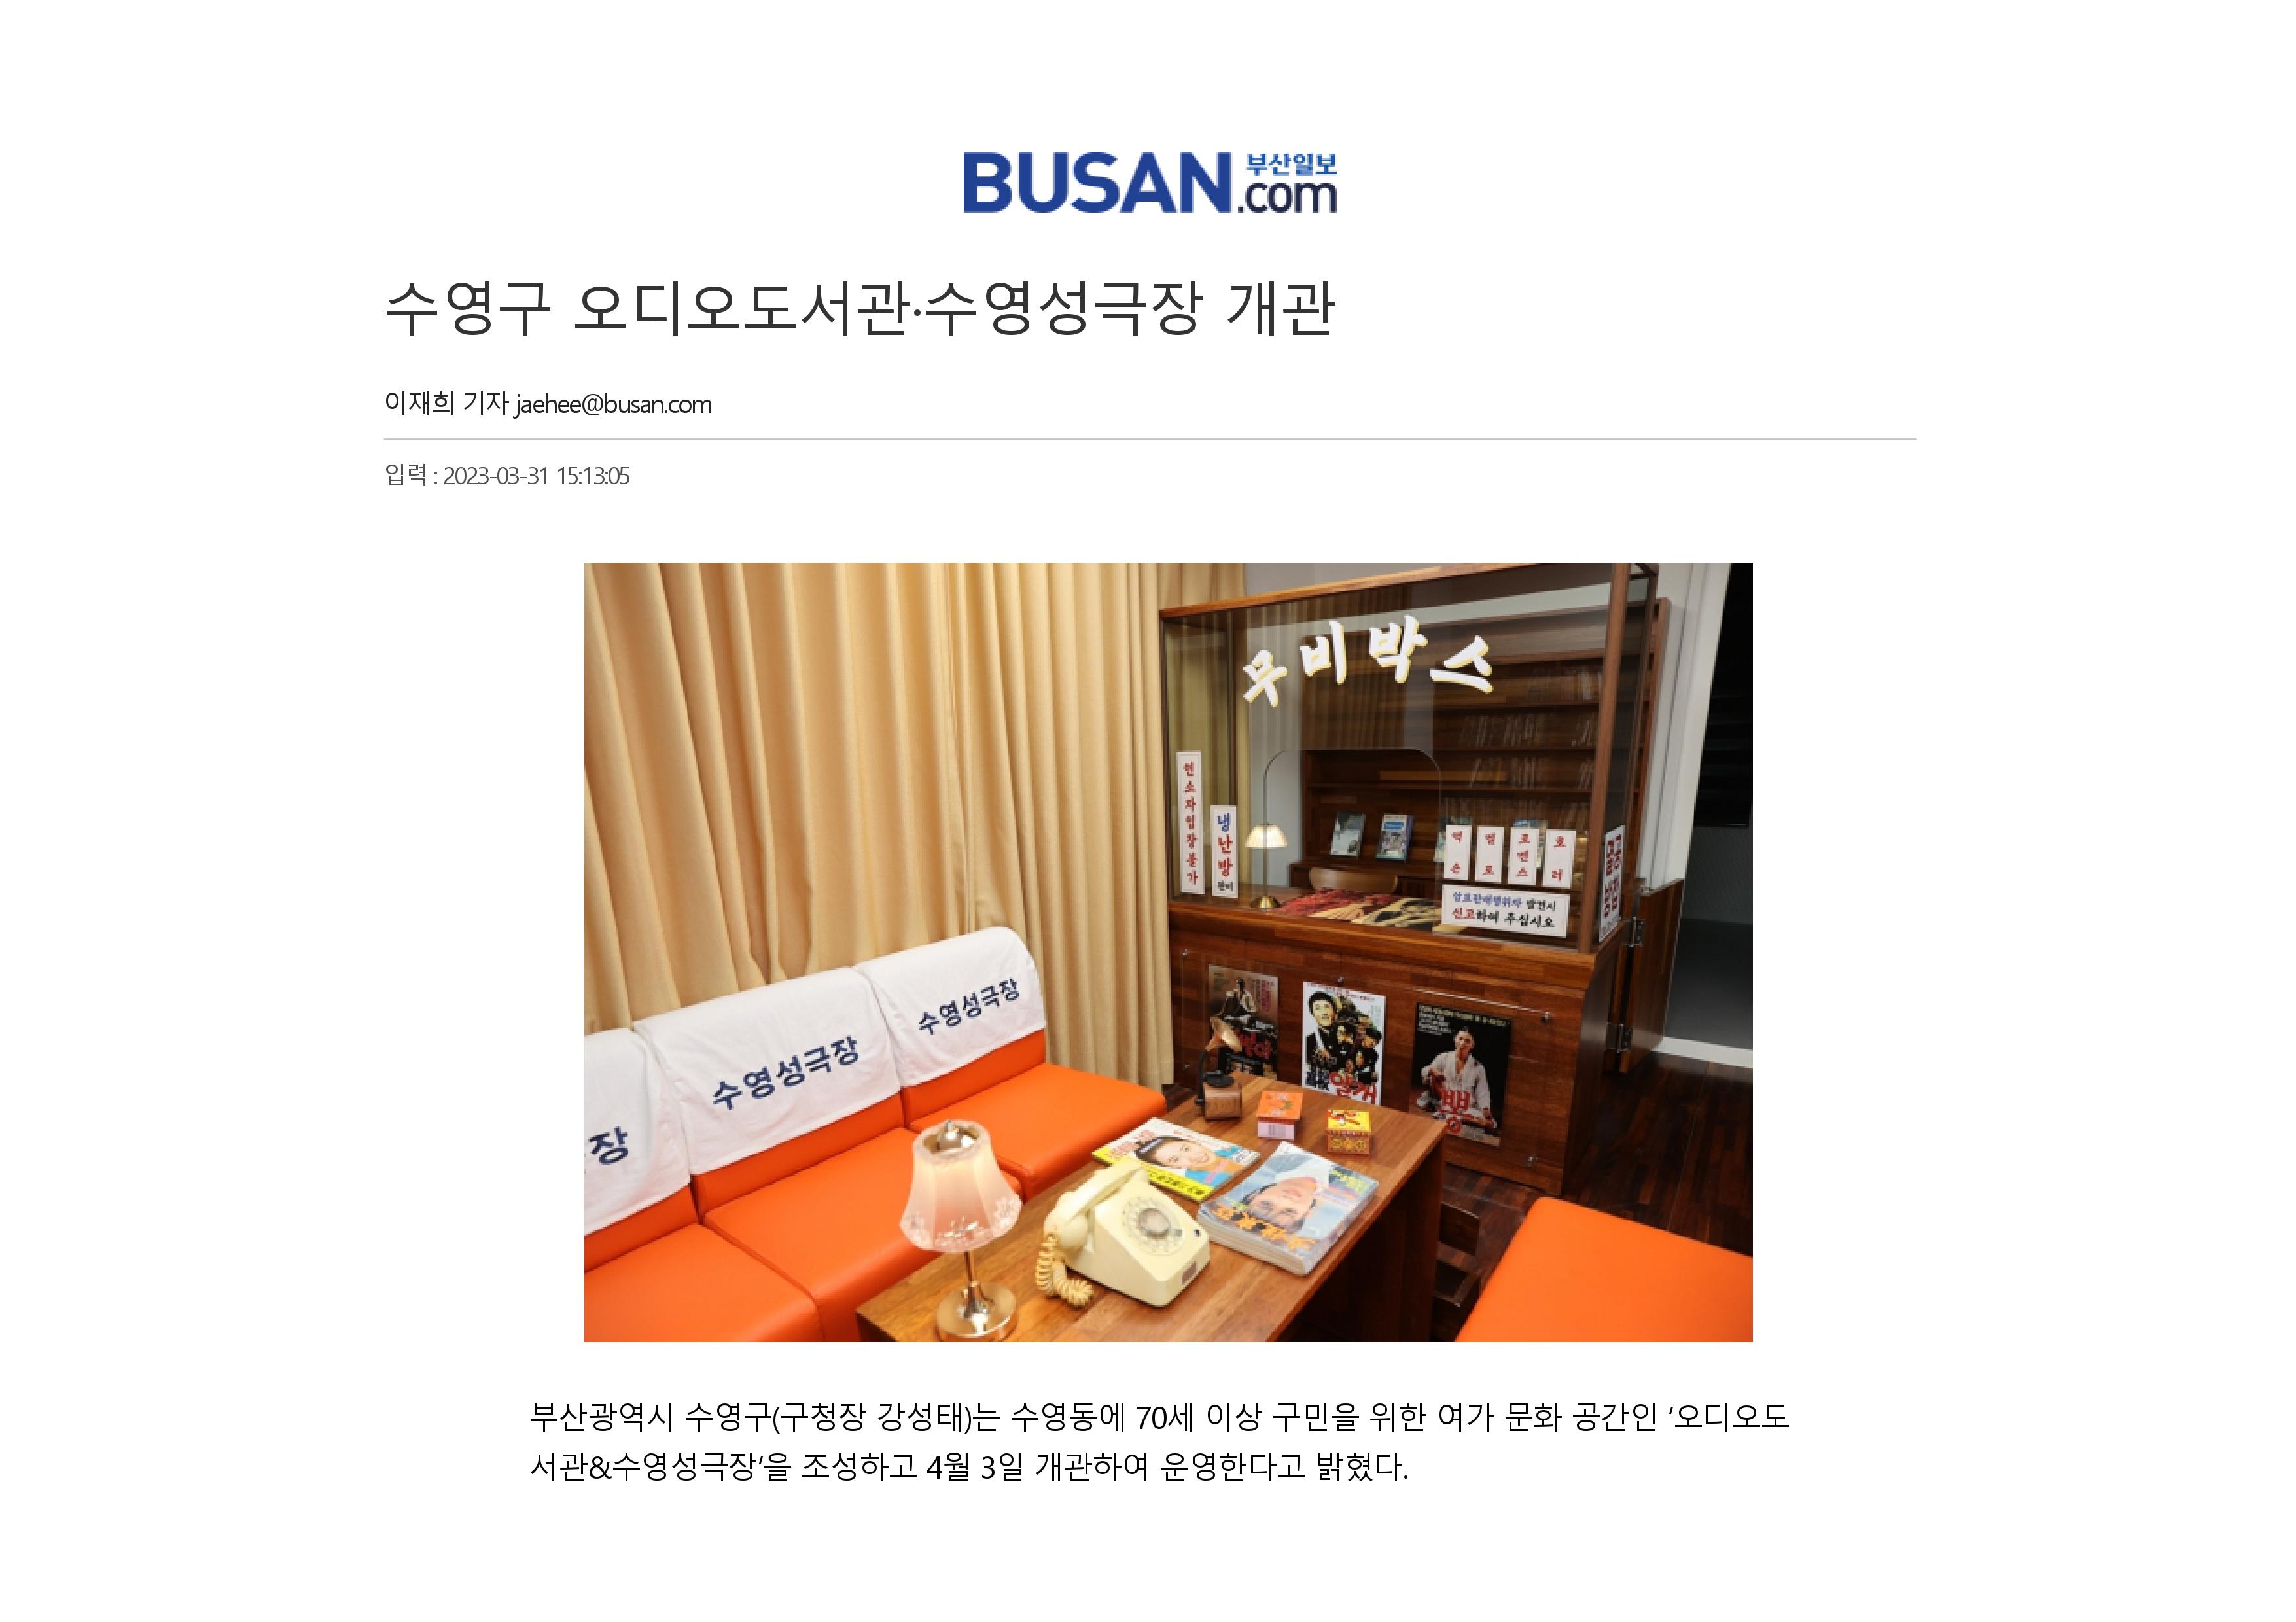 [부산일보] 수영구 오디오도서관·수영성극장 개관 1